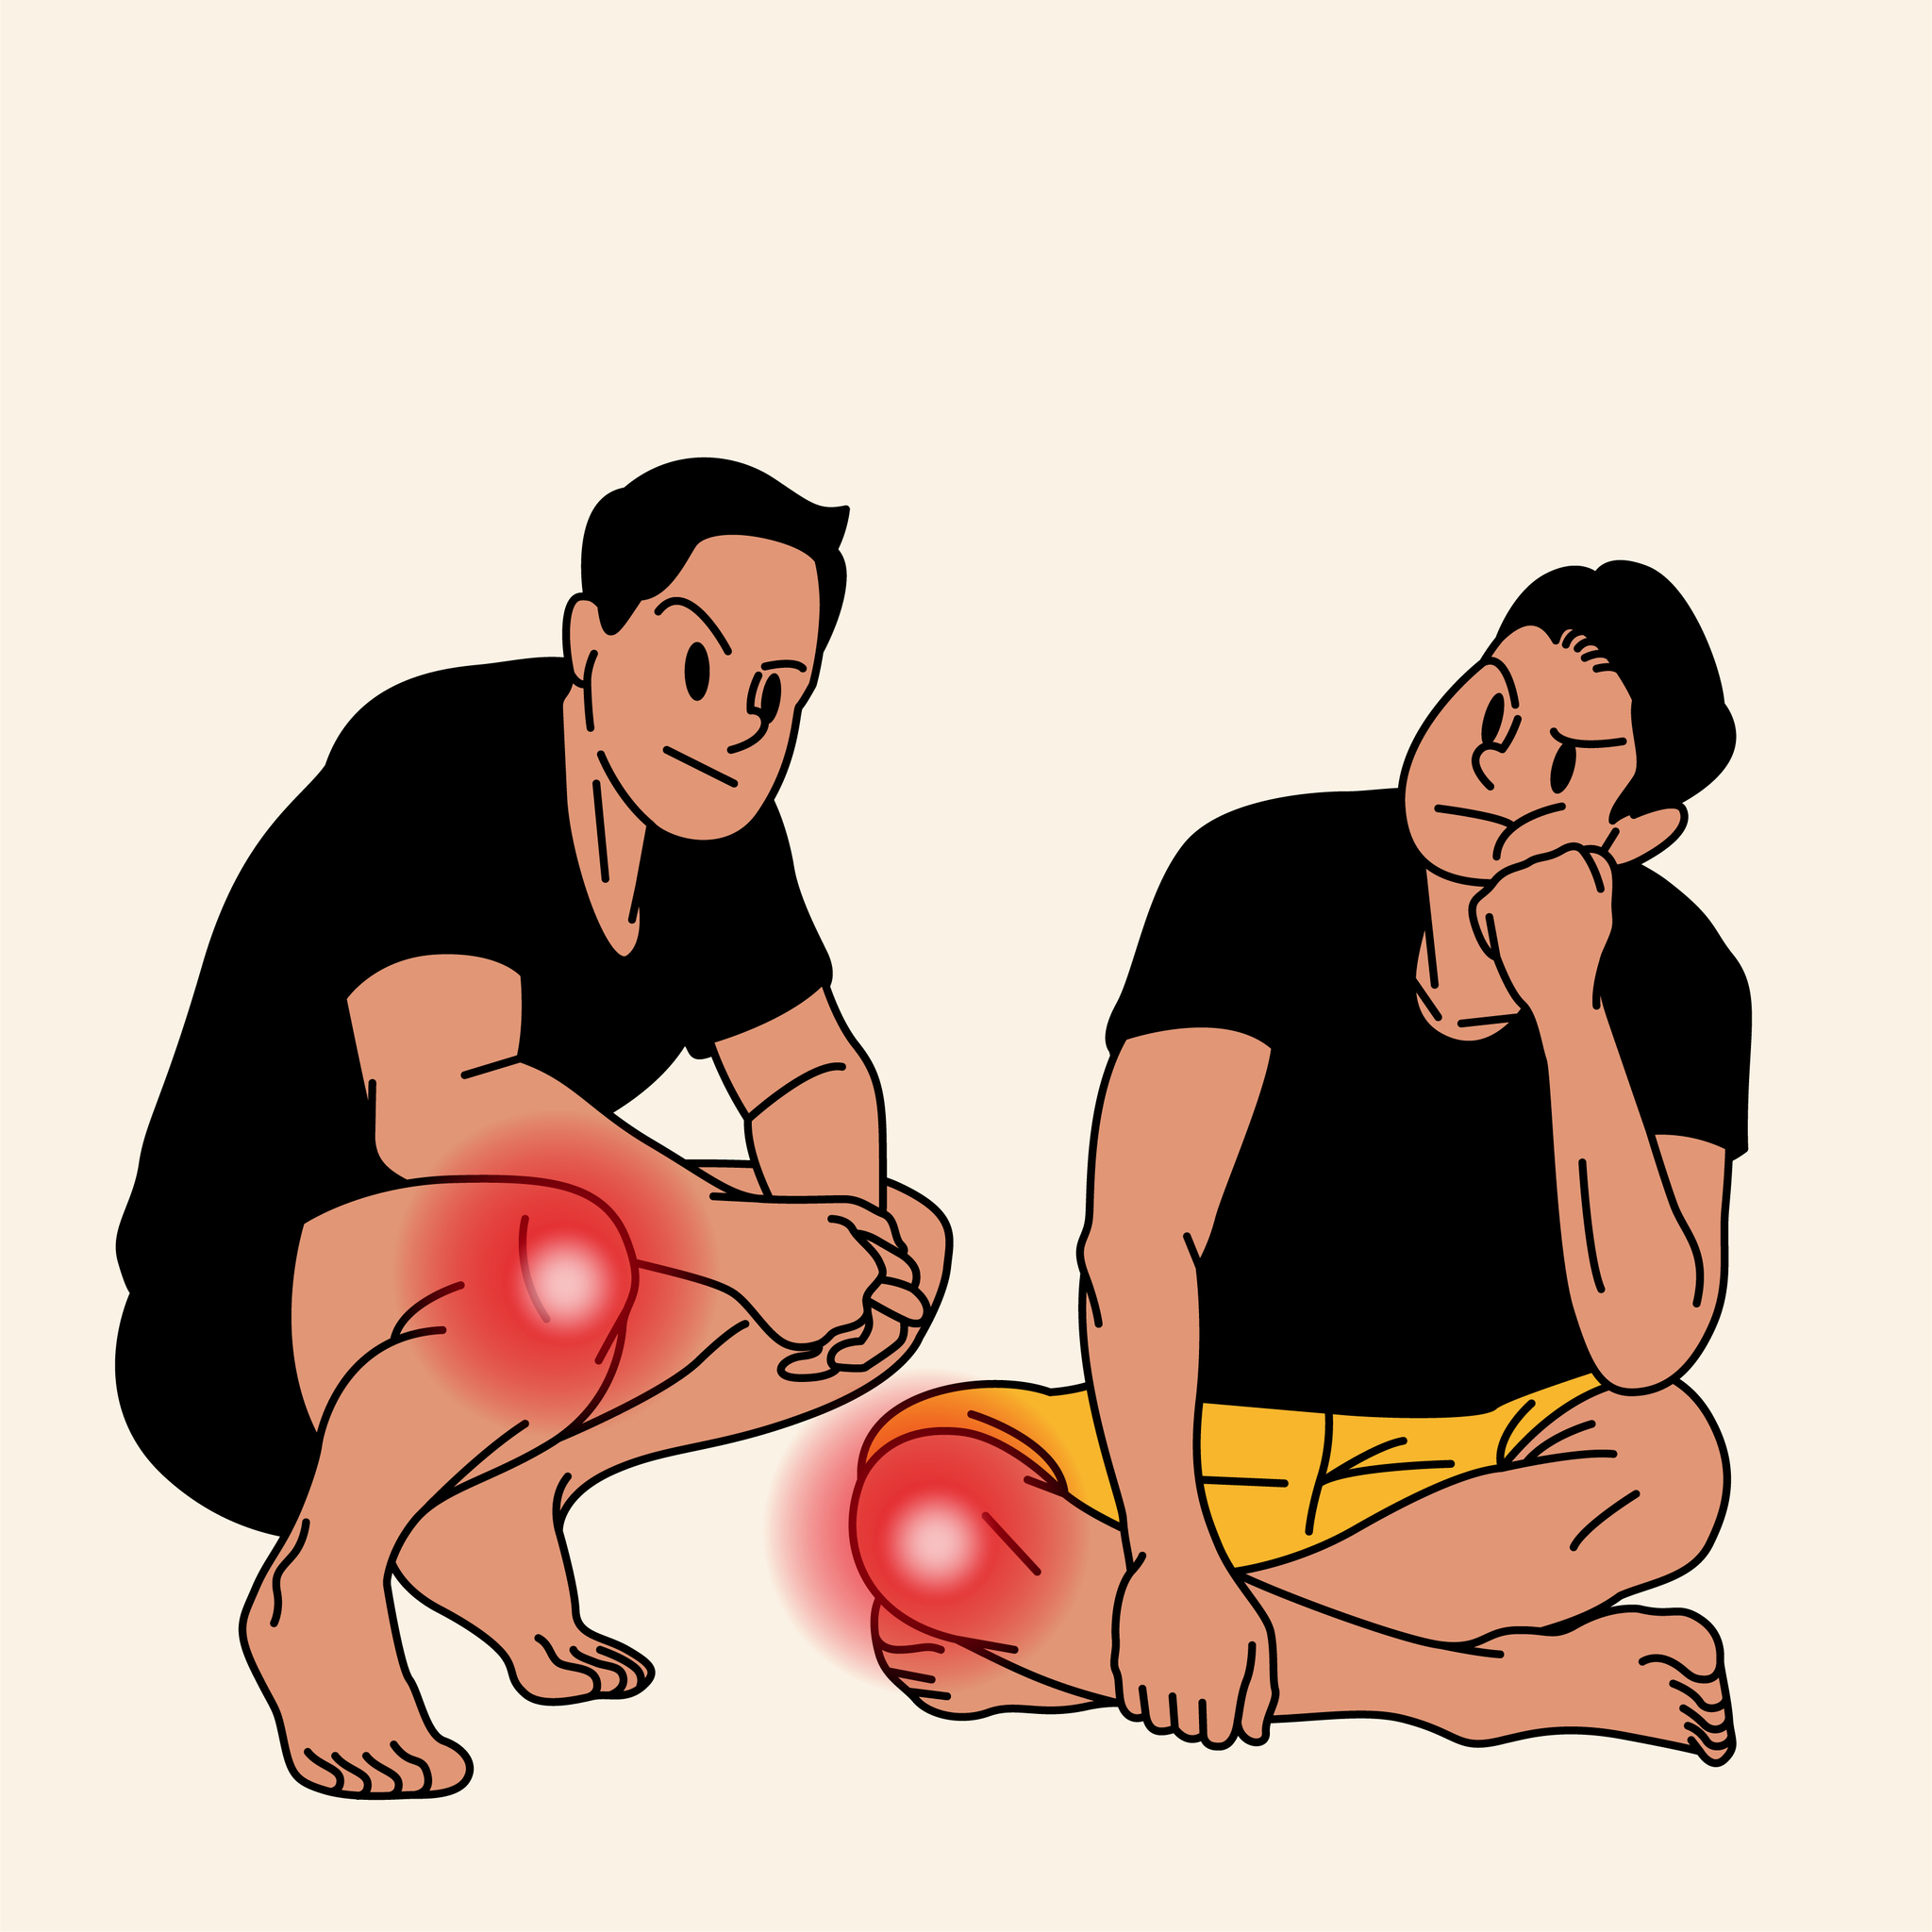 무릎 관절을 아작내는 나쁜 습관들